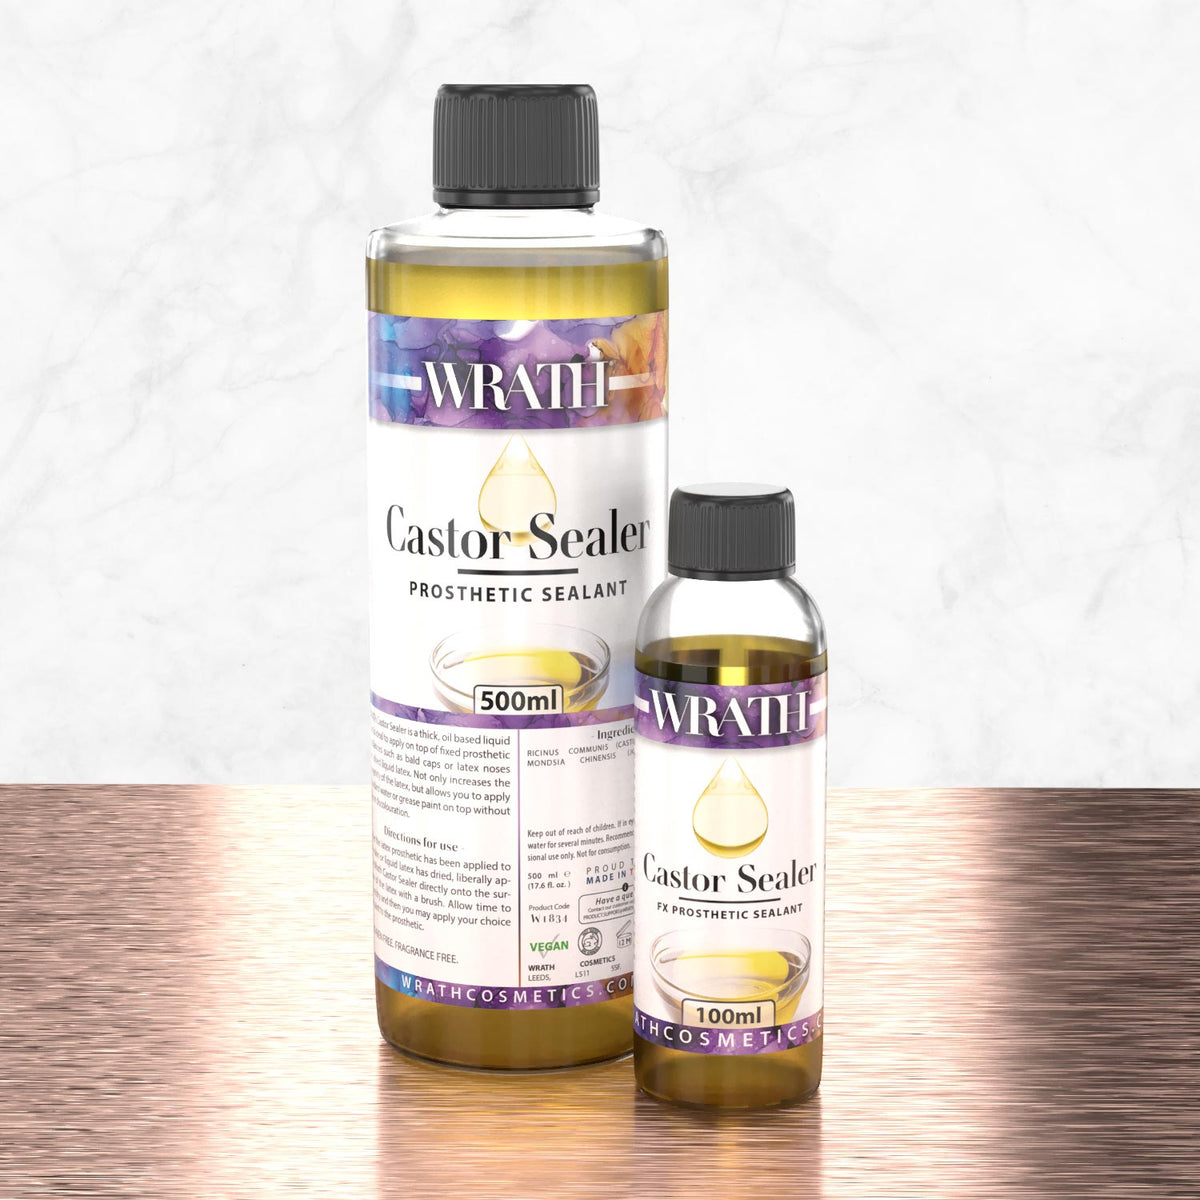 WRATH Castor Sealer - FX Prosthetic Sealant for Latex